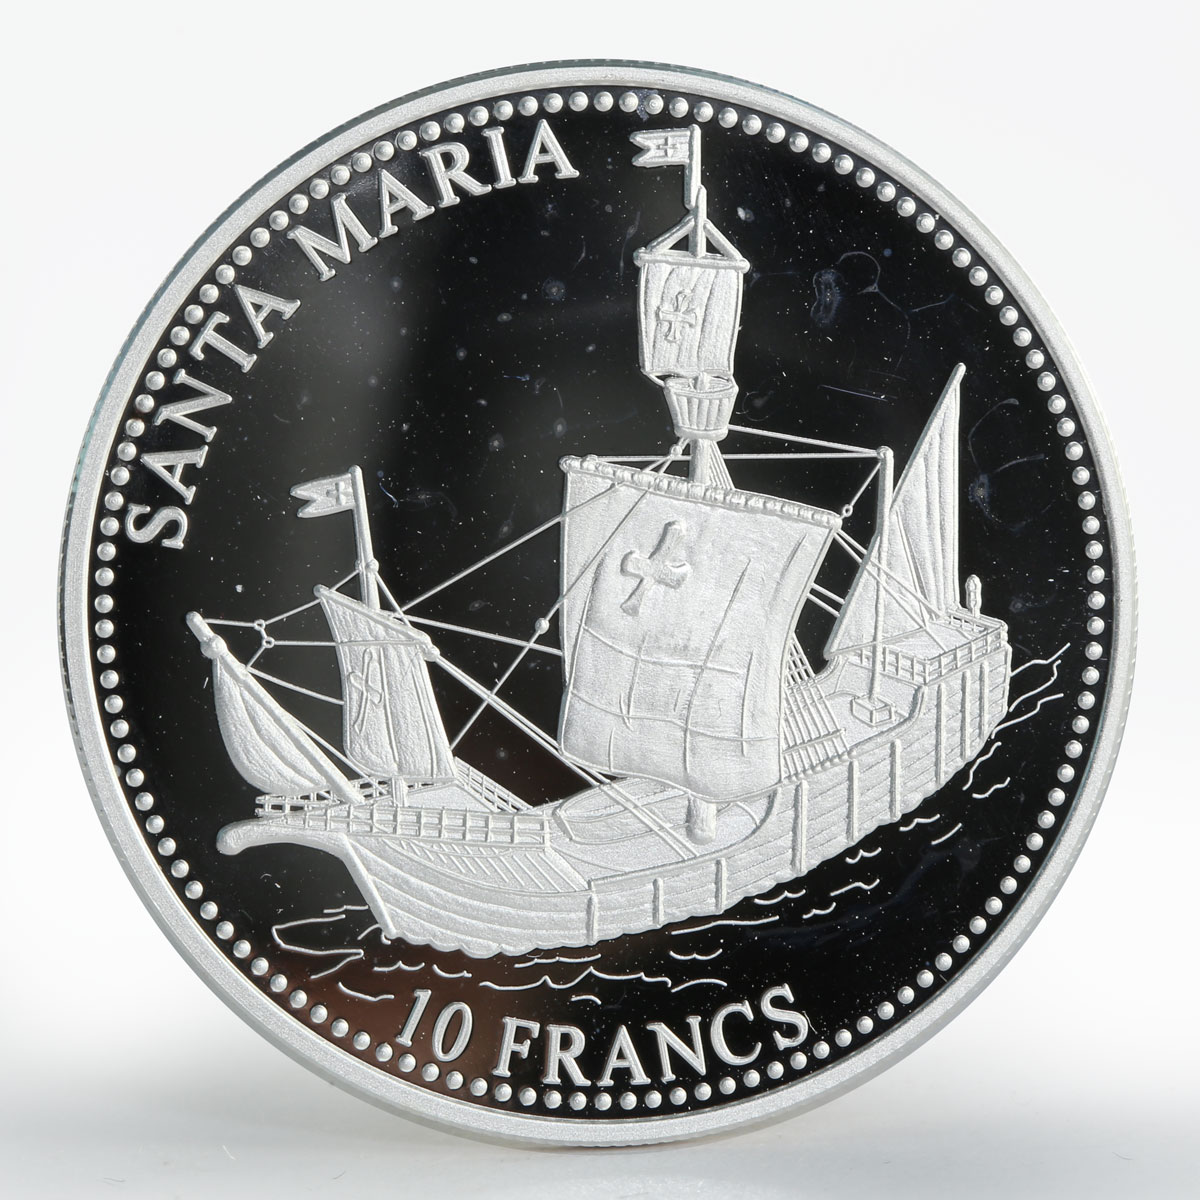 Congo 10 francs Ship Santa Maria silver proof coin 2001